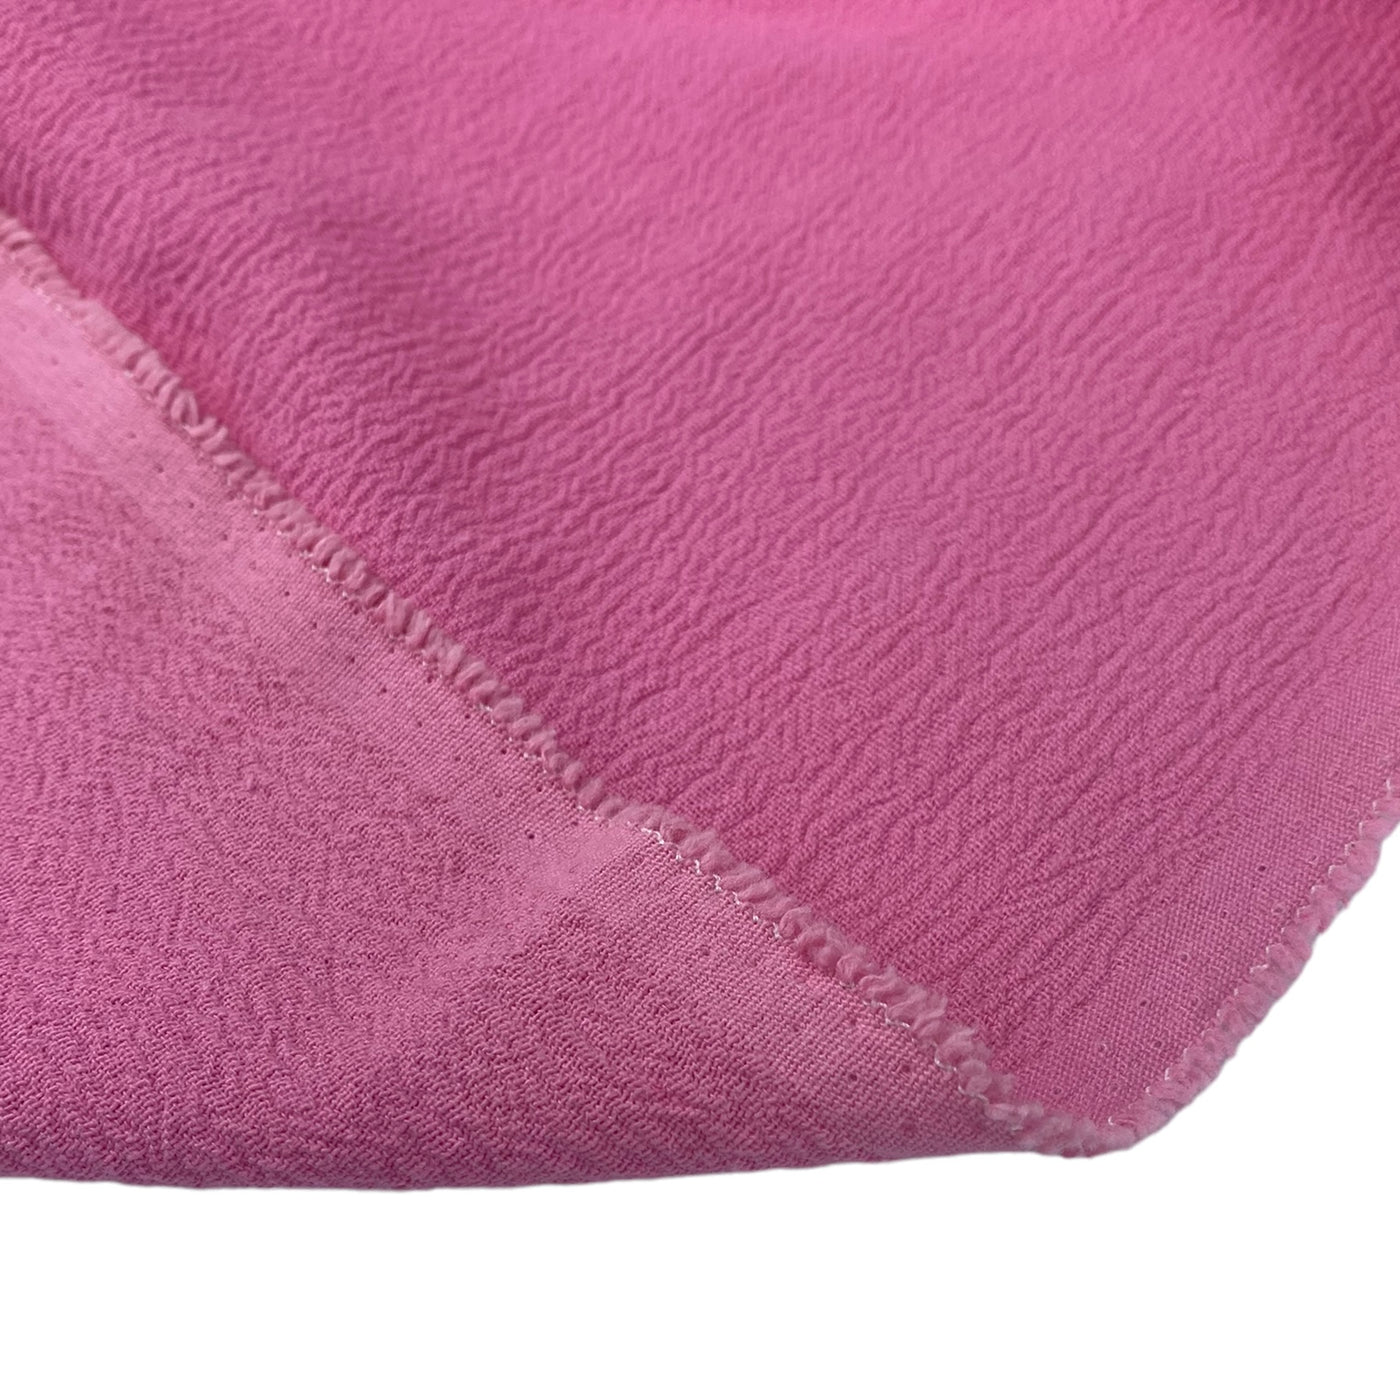 Crinkled Cotton - 6oz - Pink